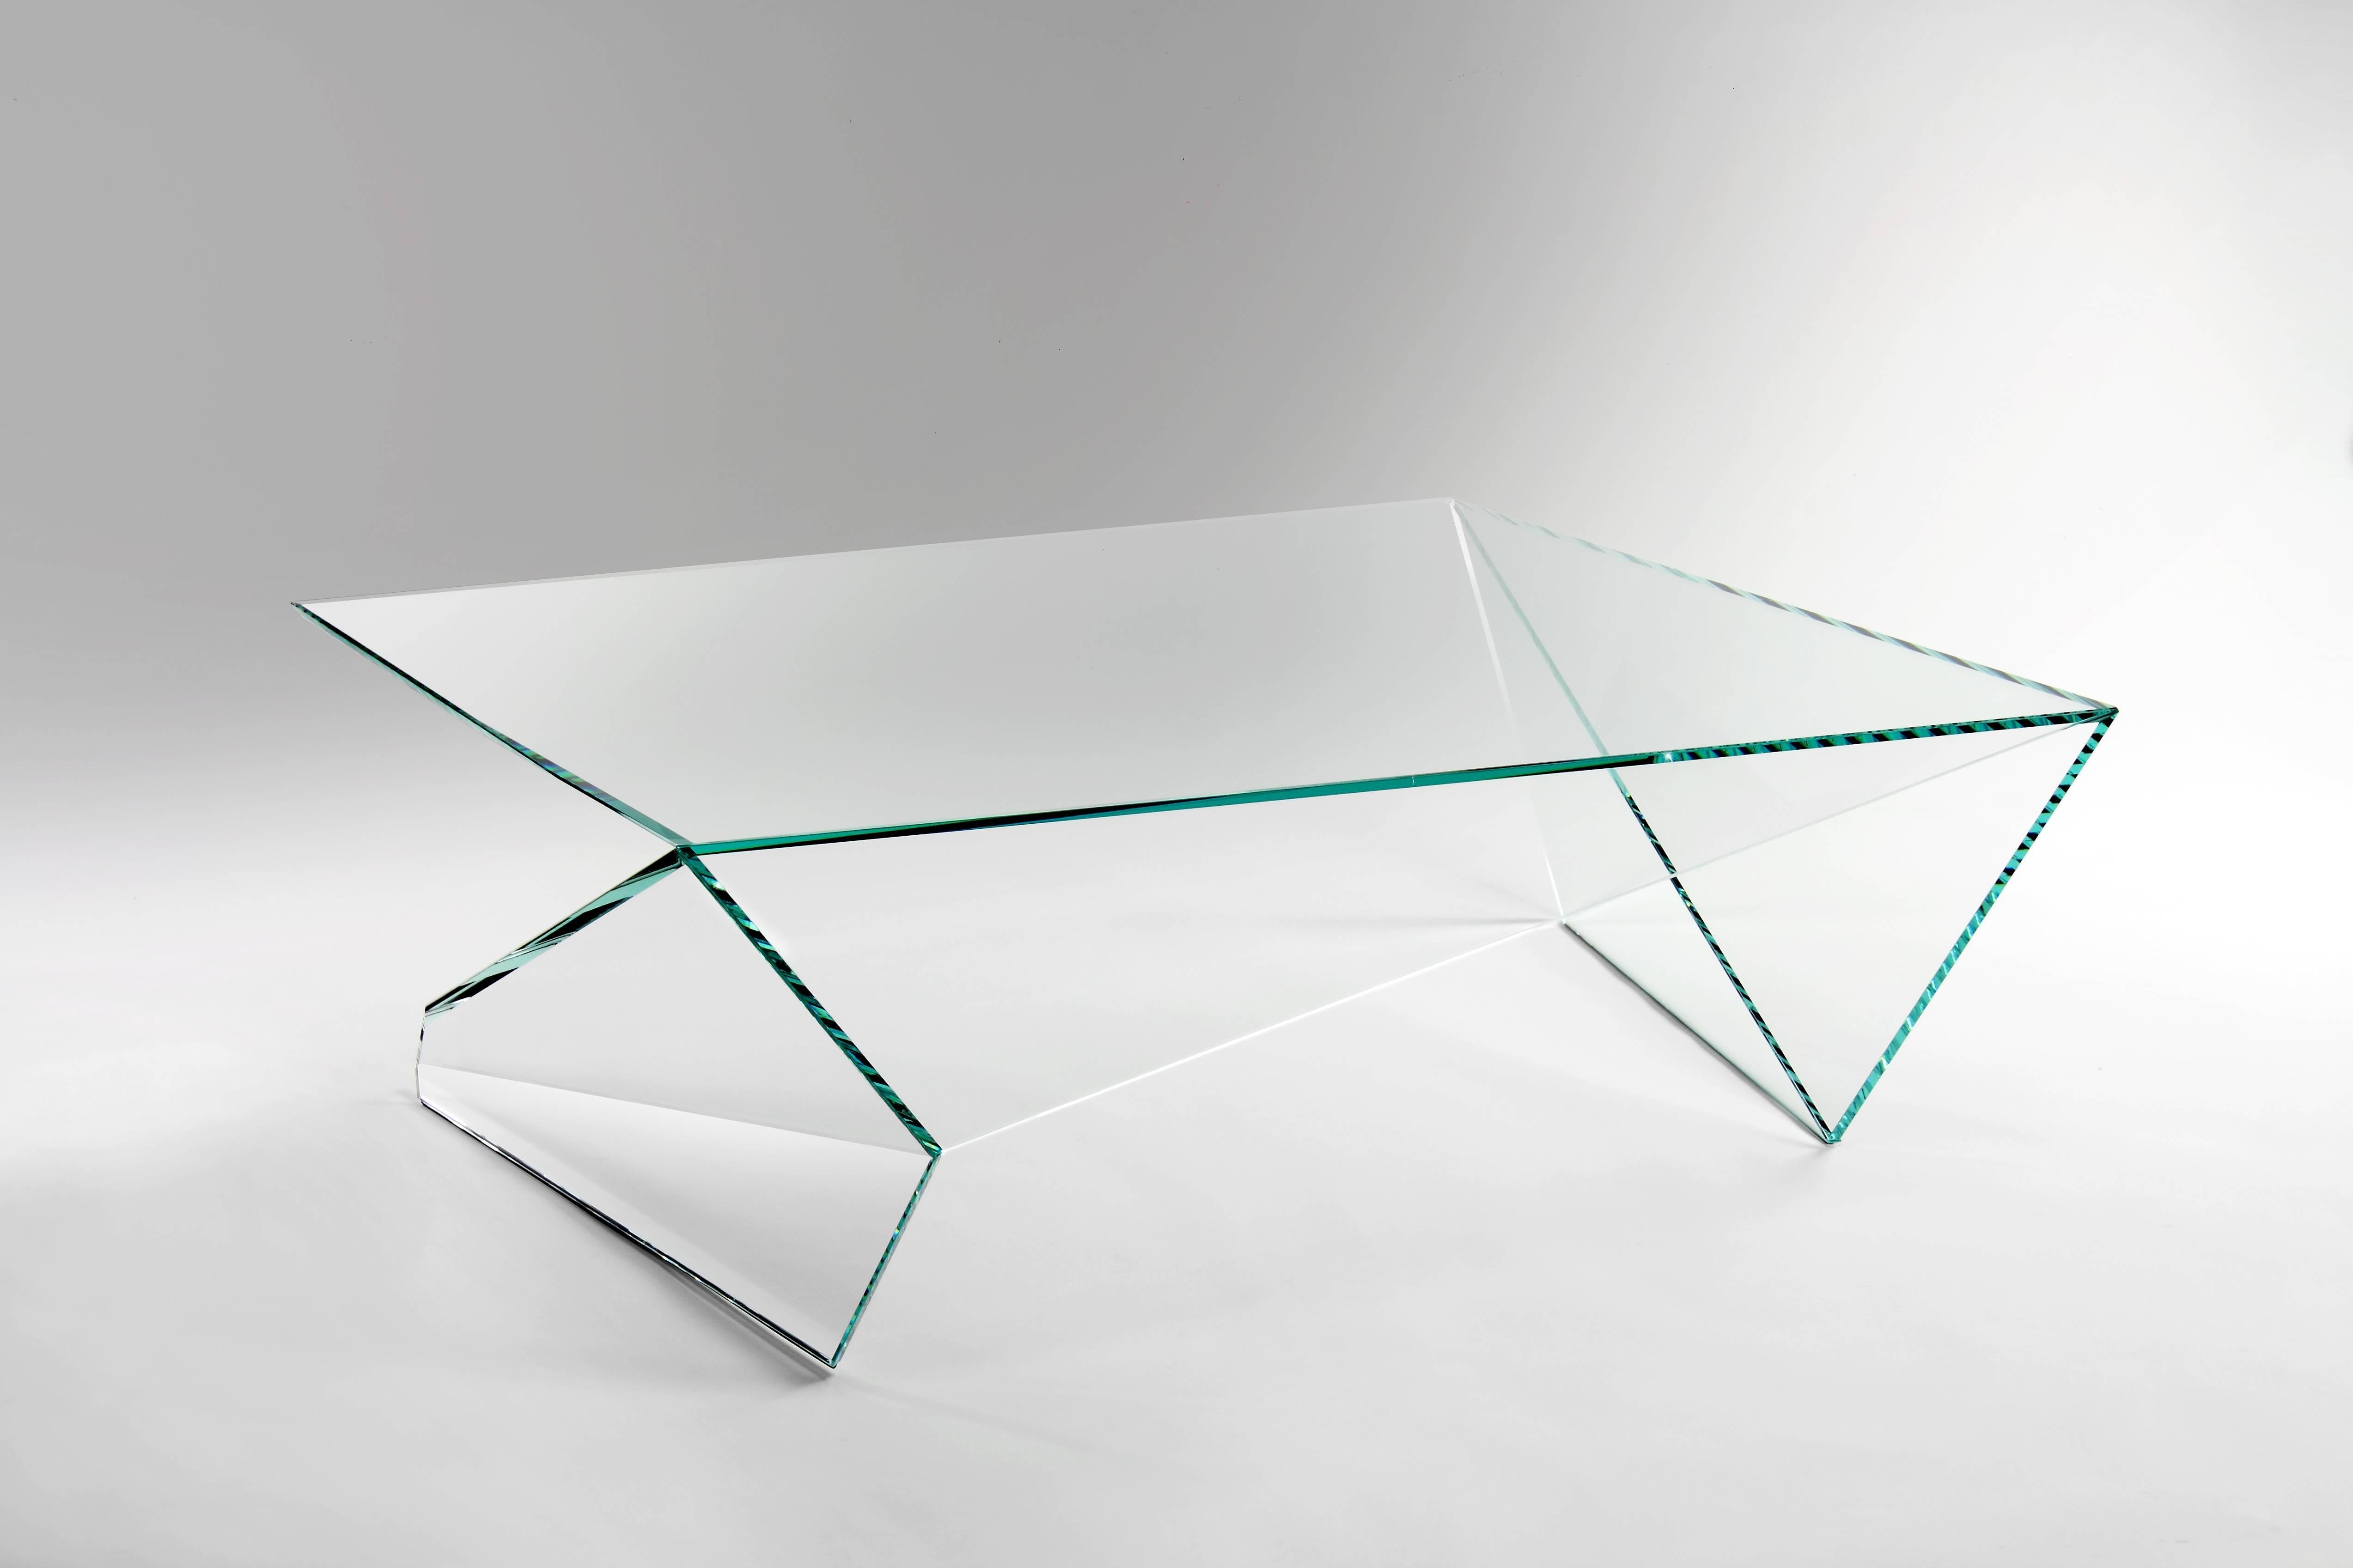 Der Couchtisch 'Origami' ist aus extraklarem Kristallglas gefertigt. Jede Scheibe aus extraklarem Kristallglas wird mit äußerster Präzision geschnitten und geschliffen, dann werden die Scheiben von Hand zusammengesetzt, wobei sie perfekt